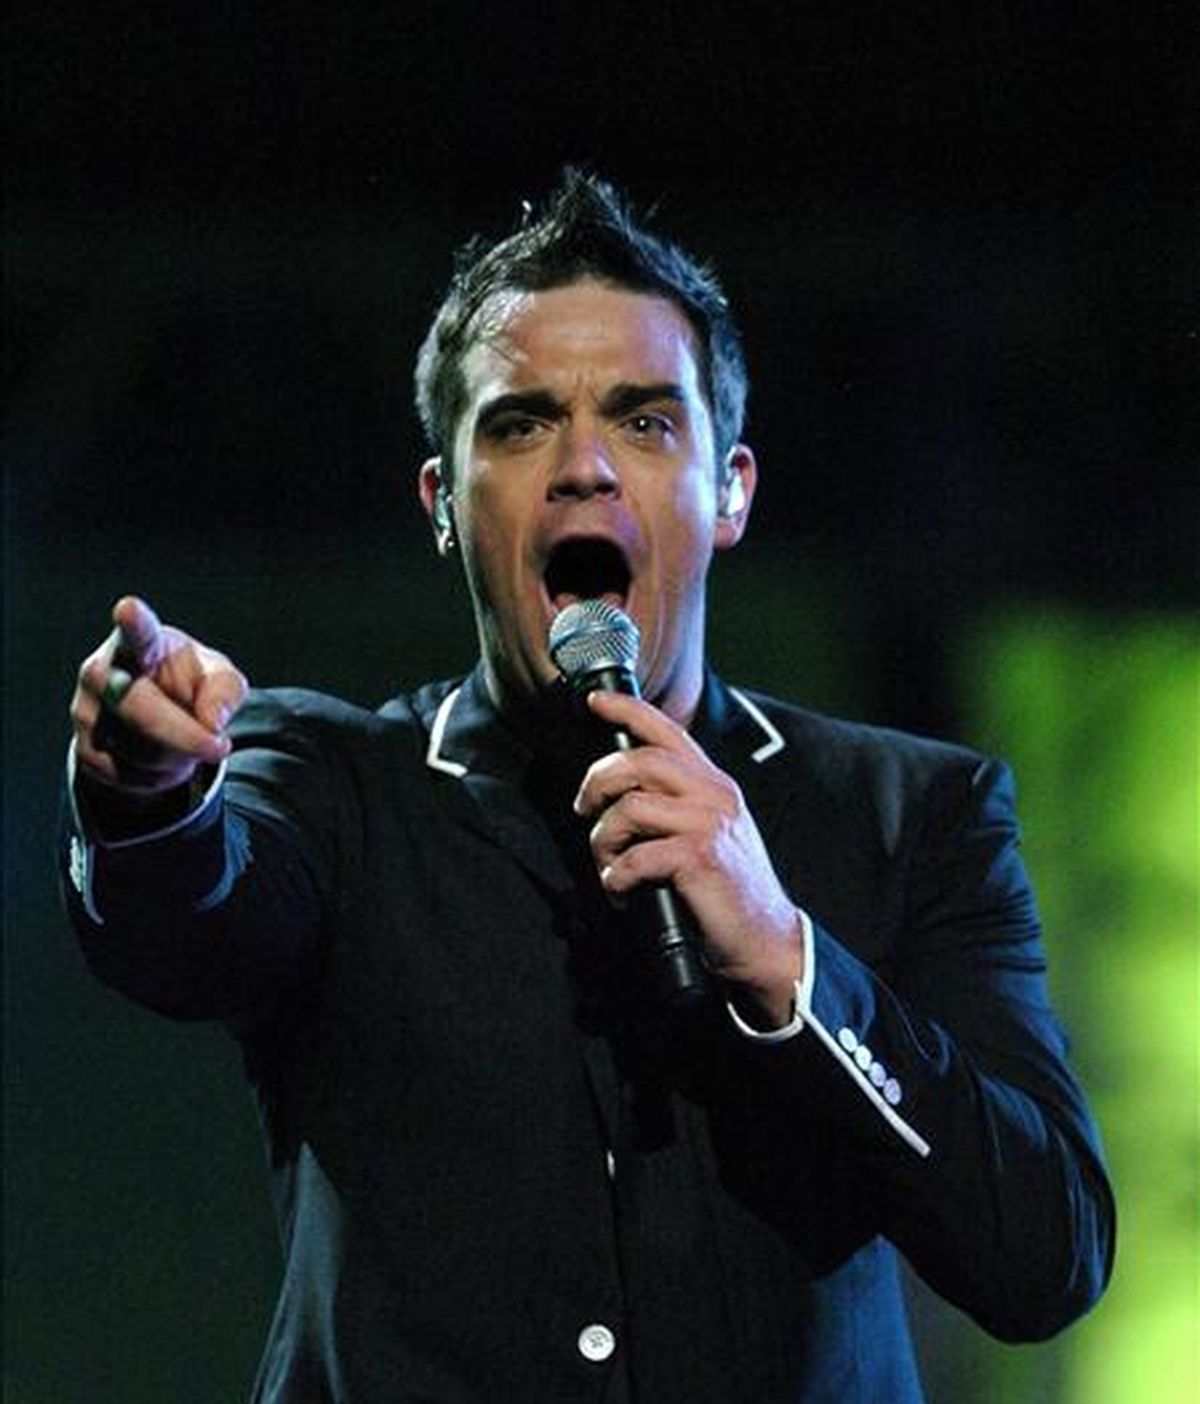 El cantante Robbie Williams está preparado para volver al grupo musical Take That. En la imagen, Robbie Williams durante una actuación. EFE/Archivo